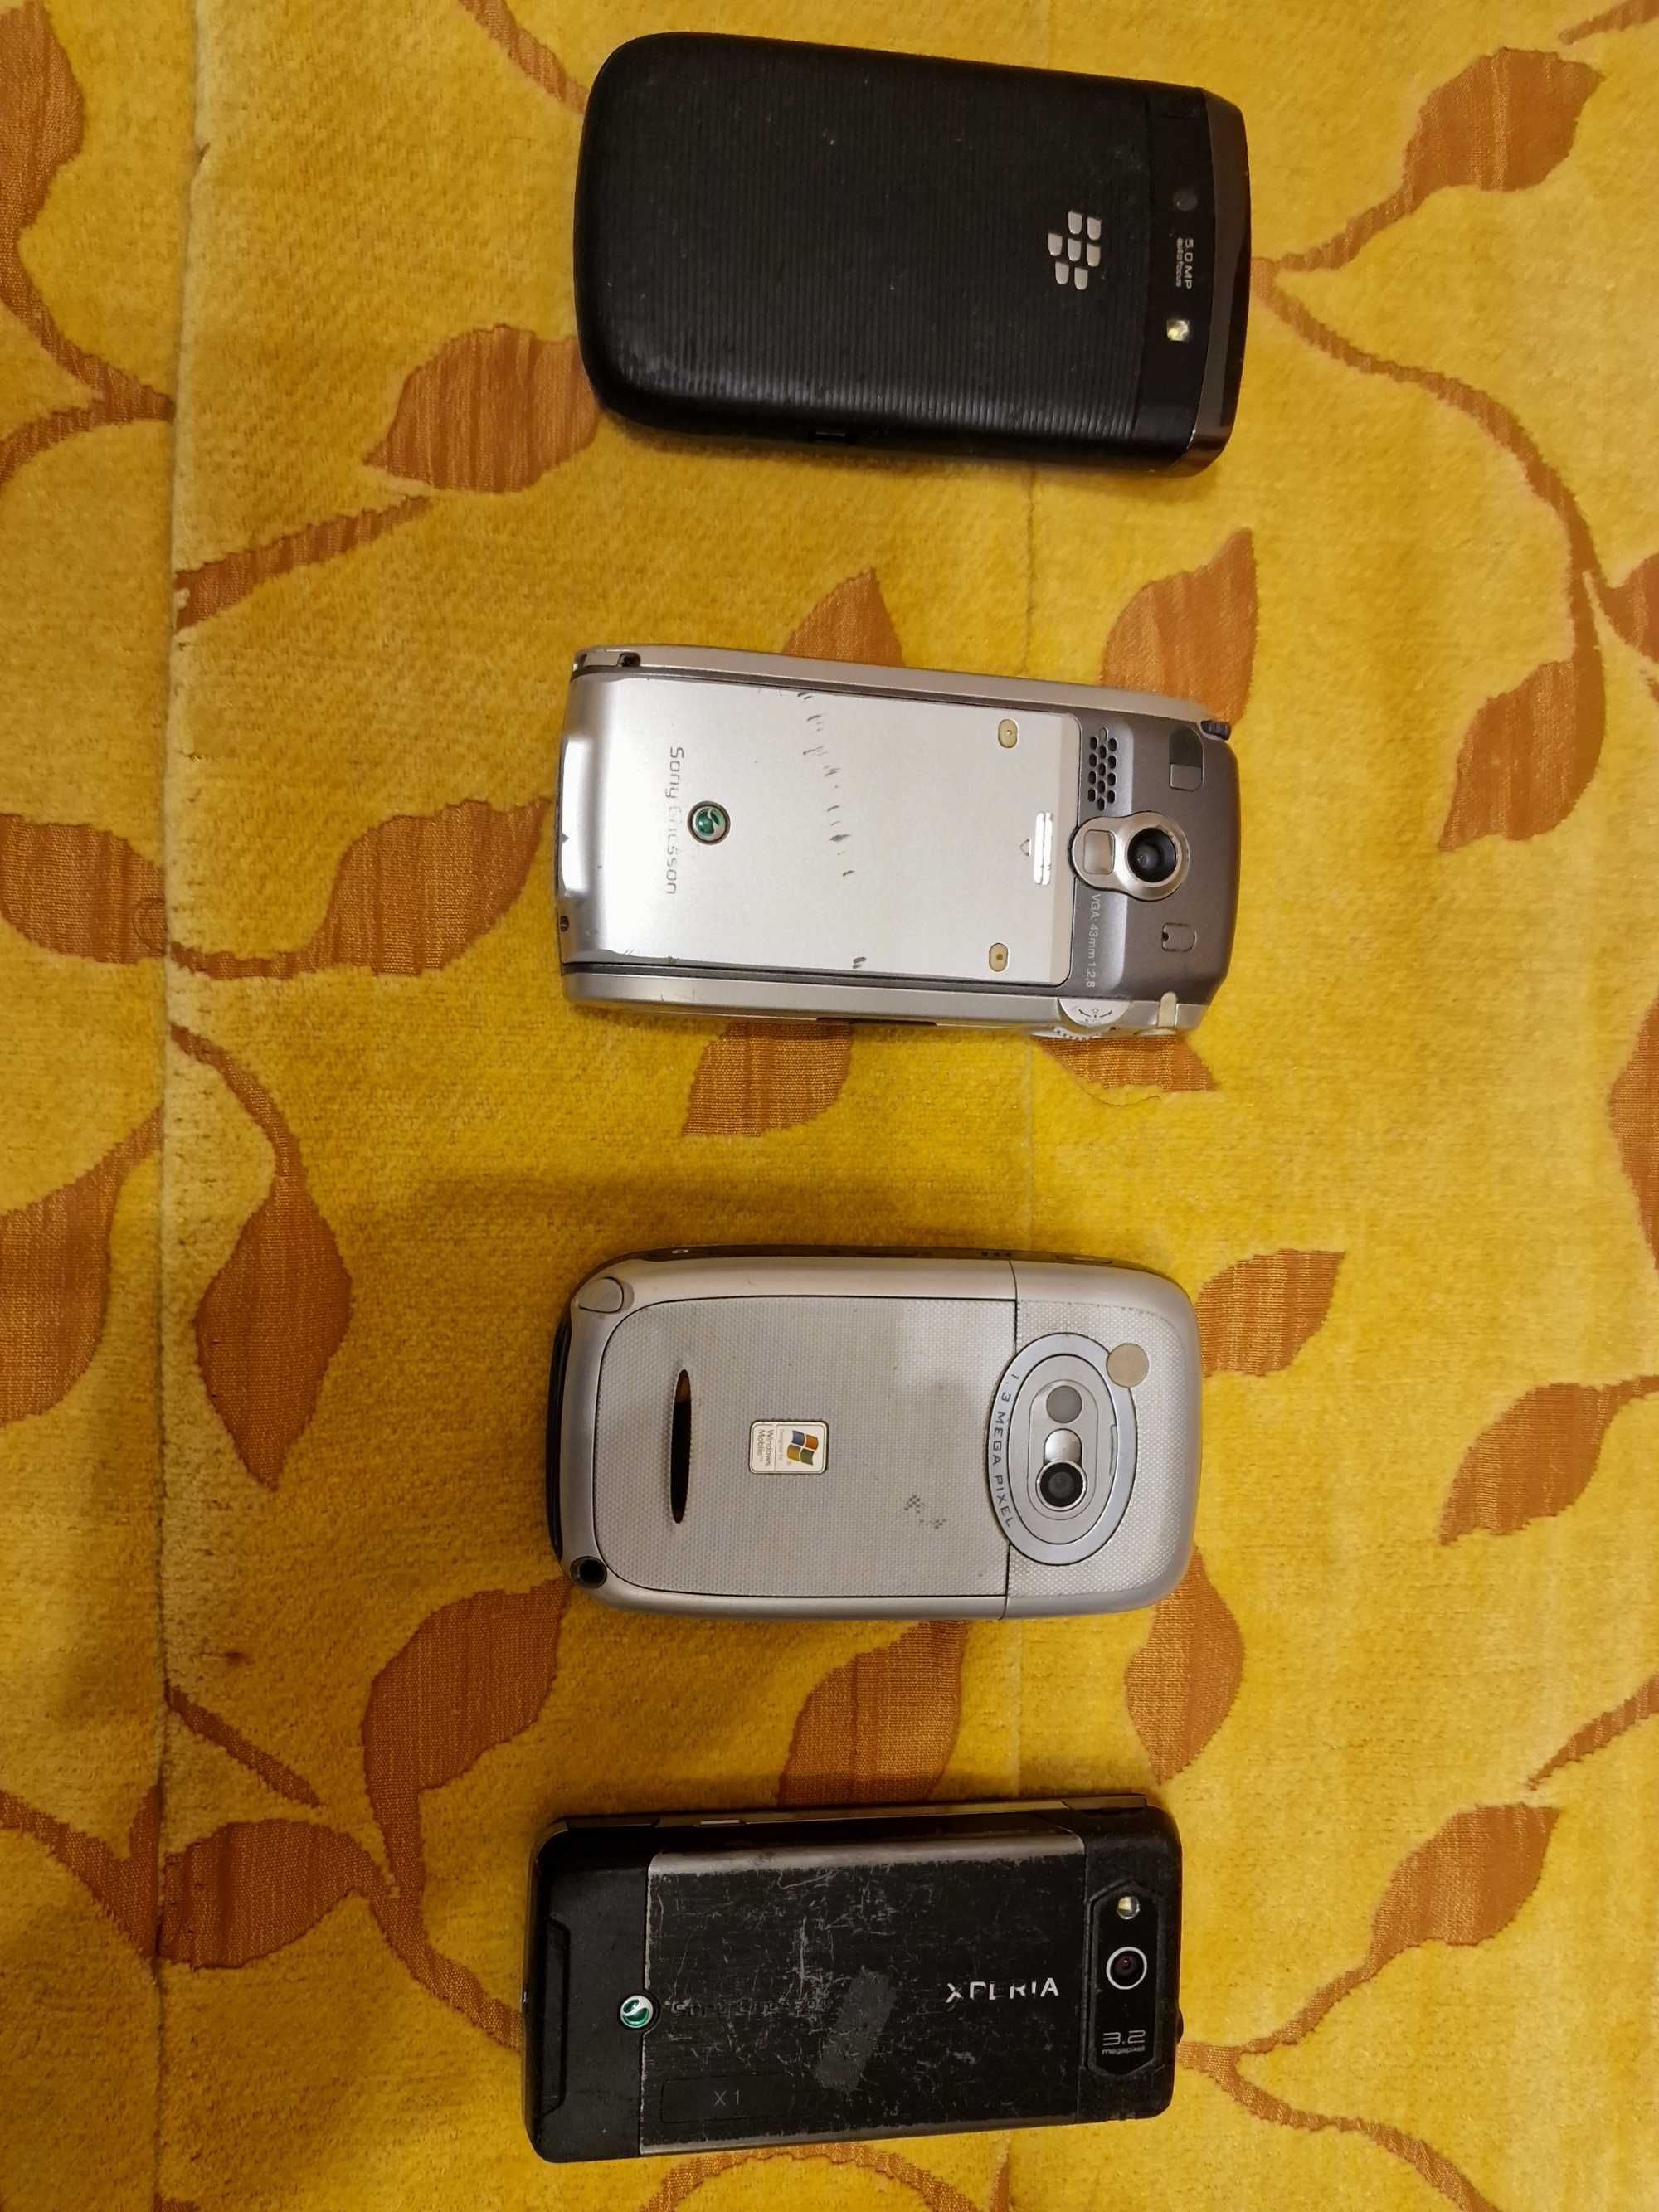 Lote de 6 telemóveis de várias marcas